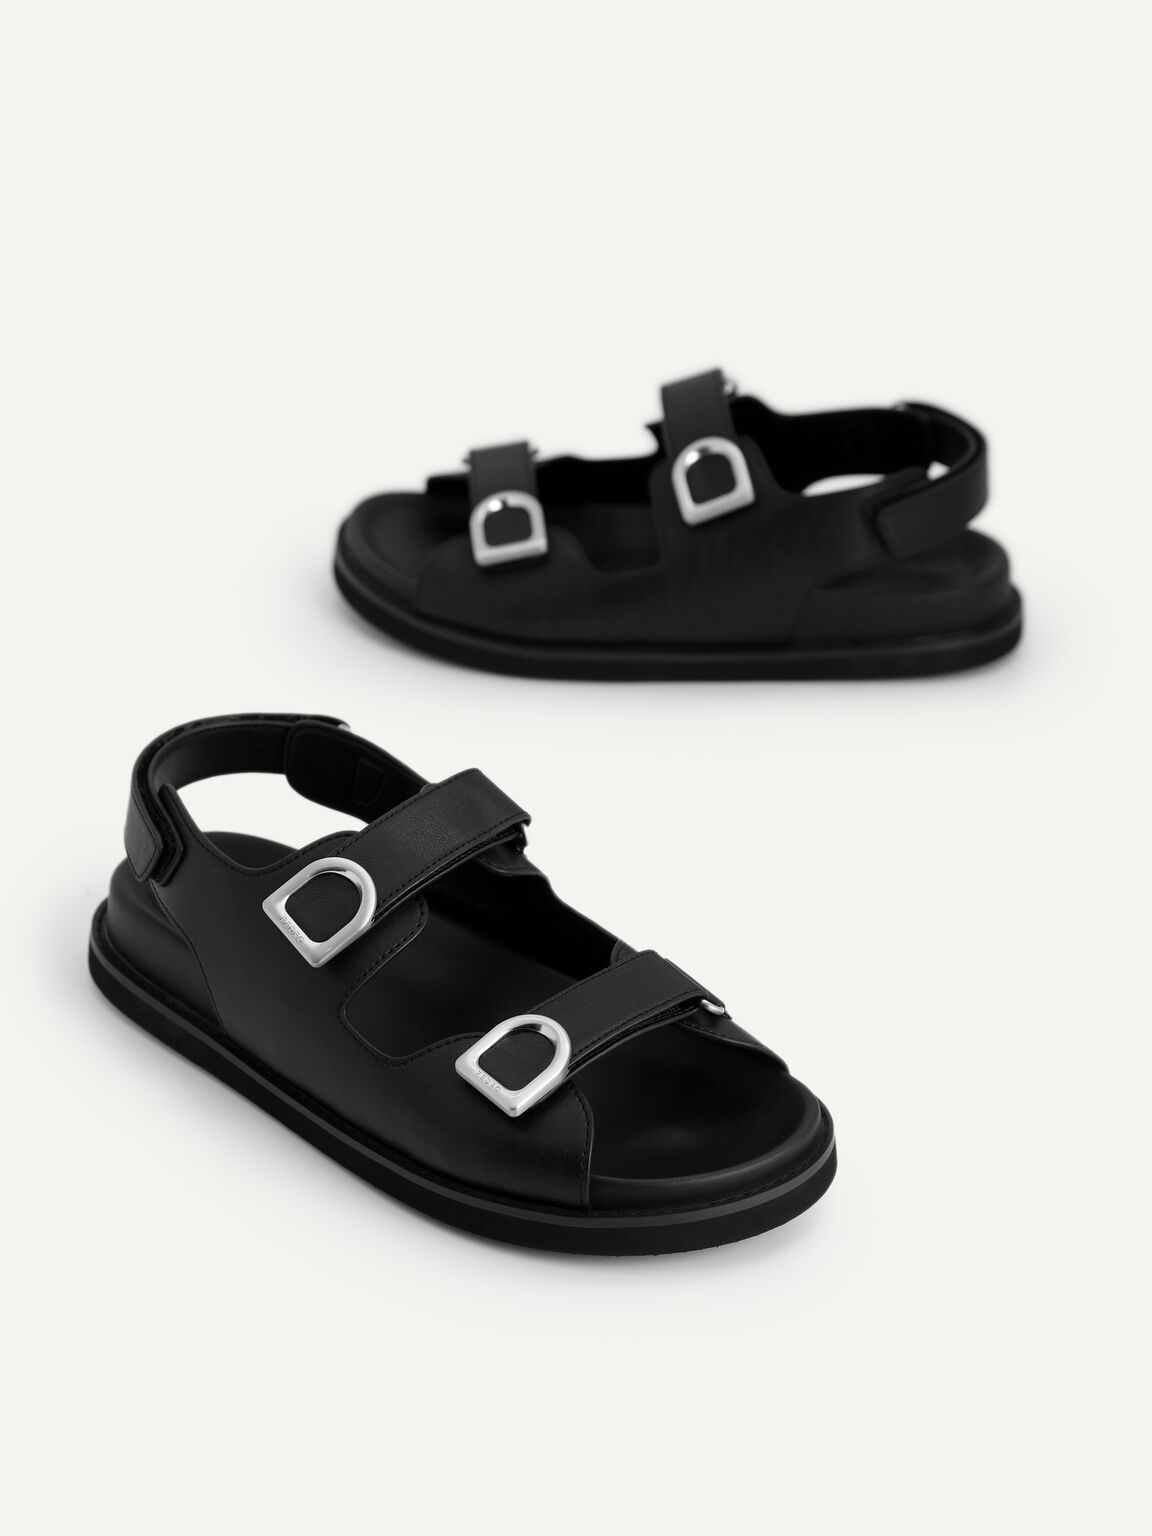 Double Strap Platform Sandals, Black